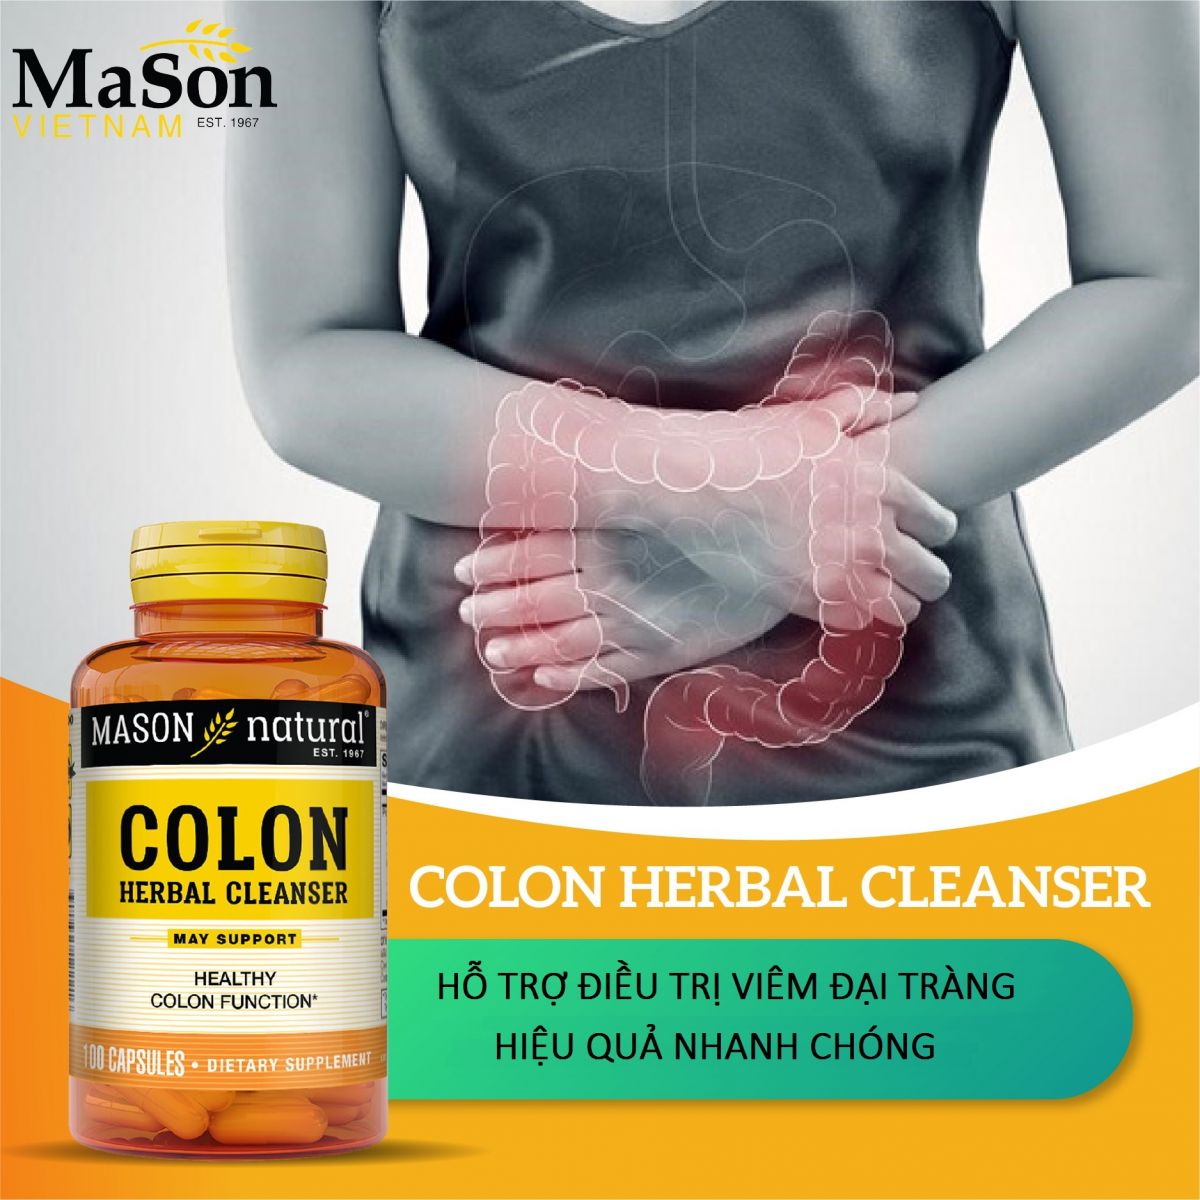 Colon Herbal Cleanser hỗ trợ điều trị viêm đại tràng góc gan